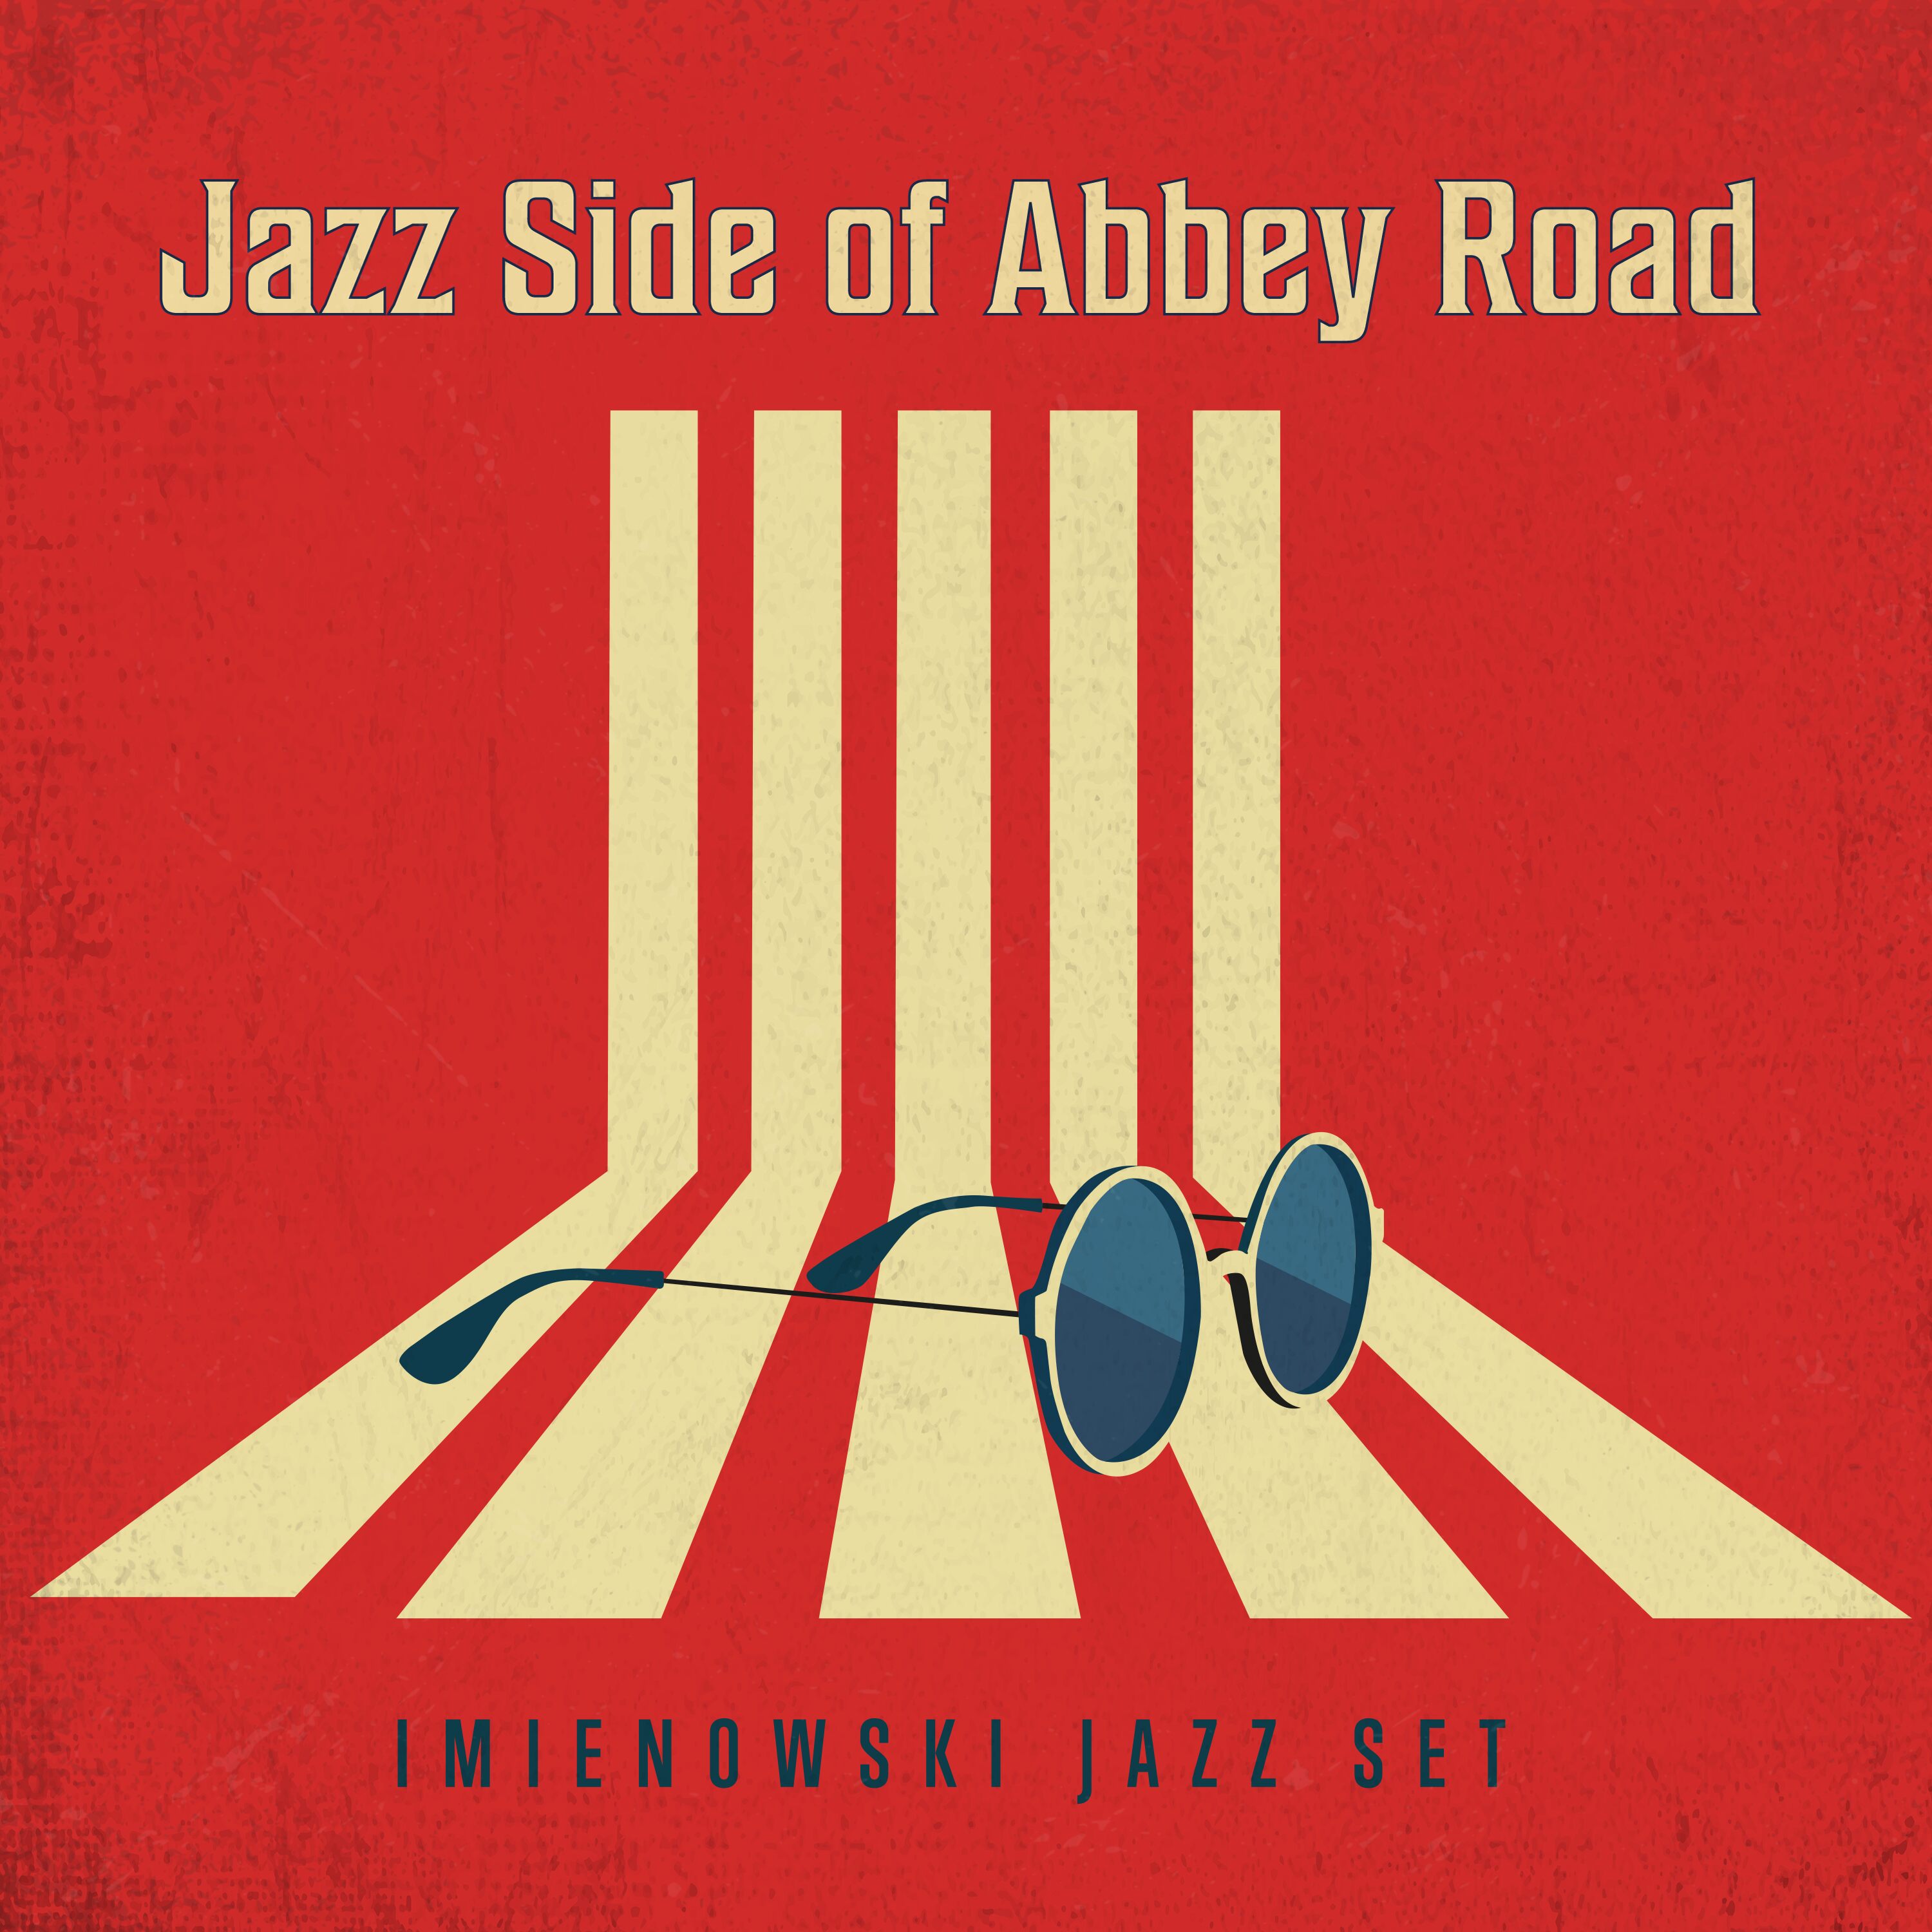 Imienowski Jazz Set.jpg